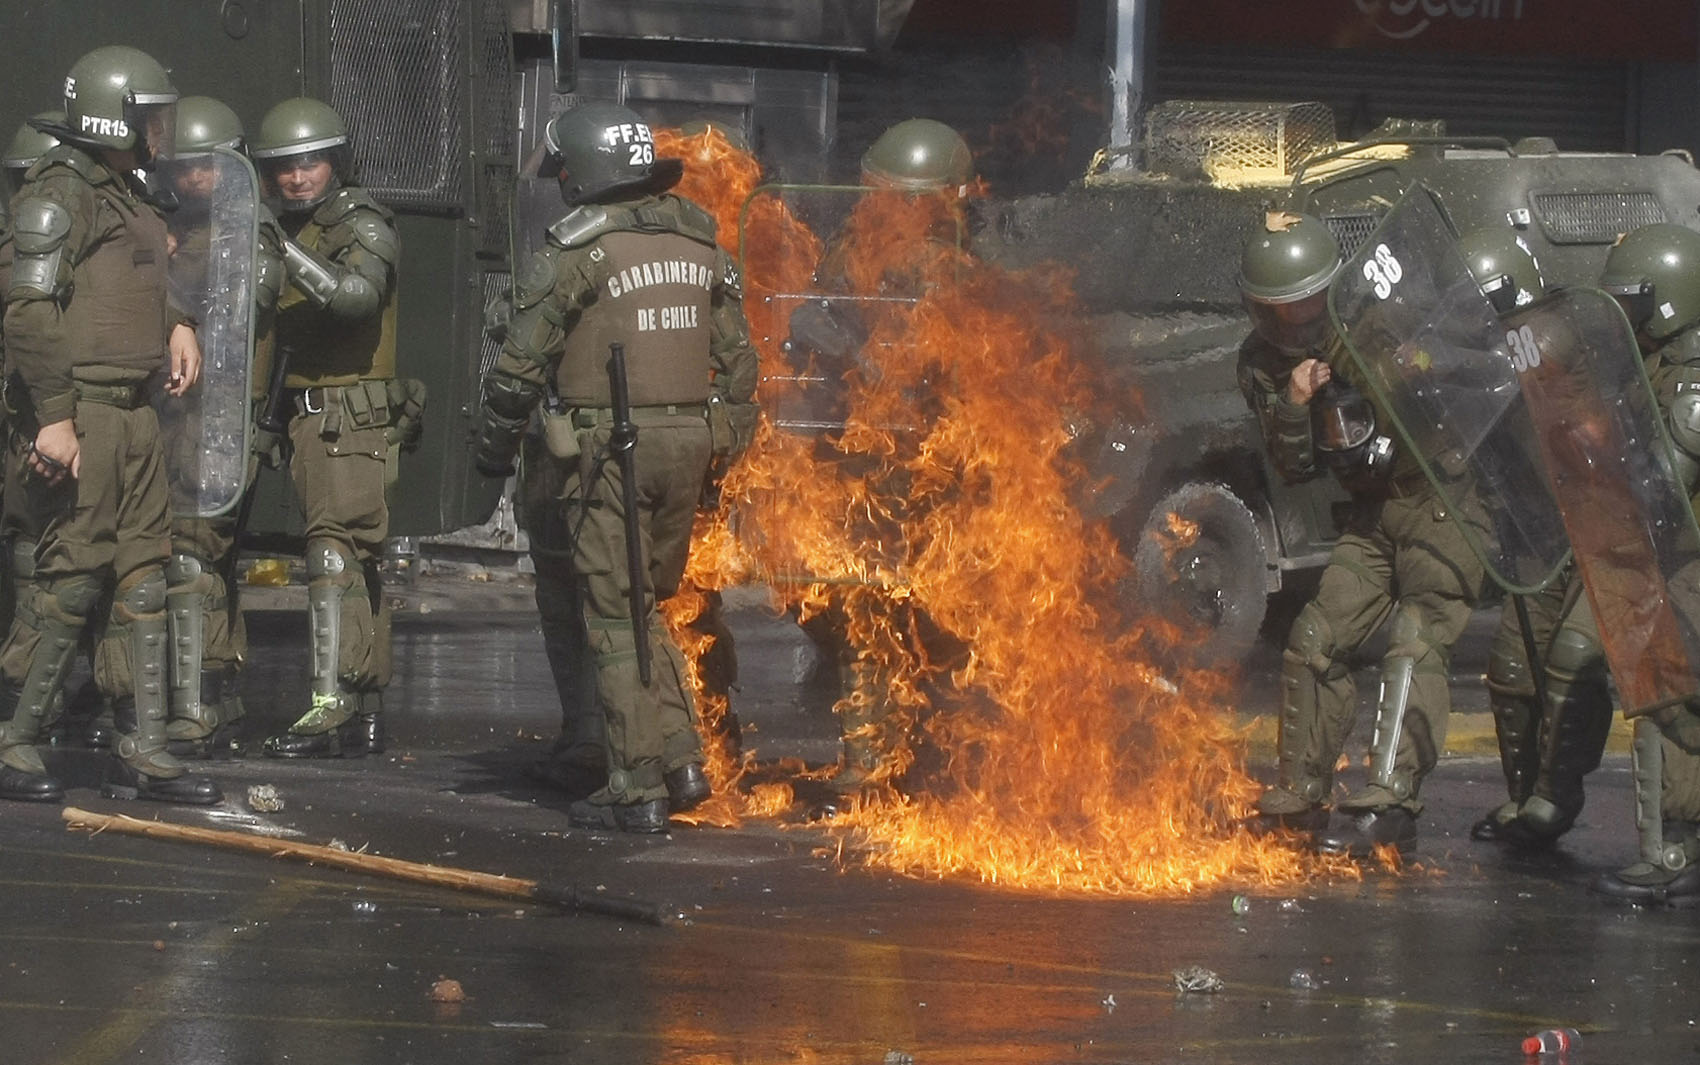 Marcha no Chile terminou em confronto entre polícia e manifestantes.